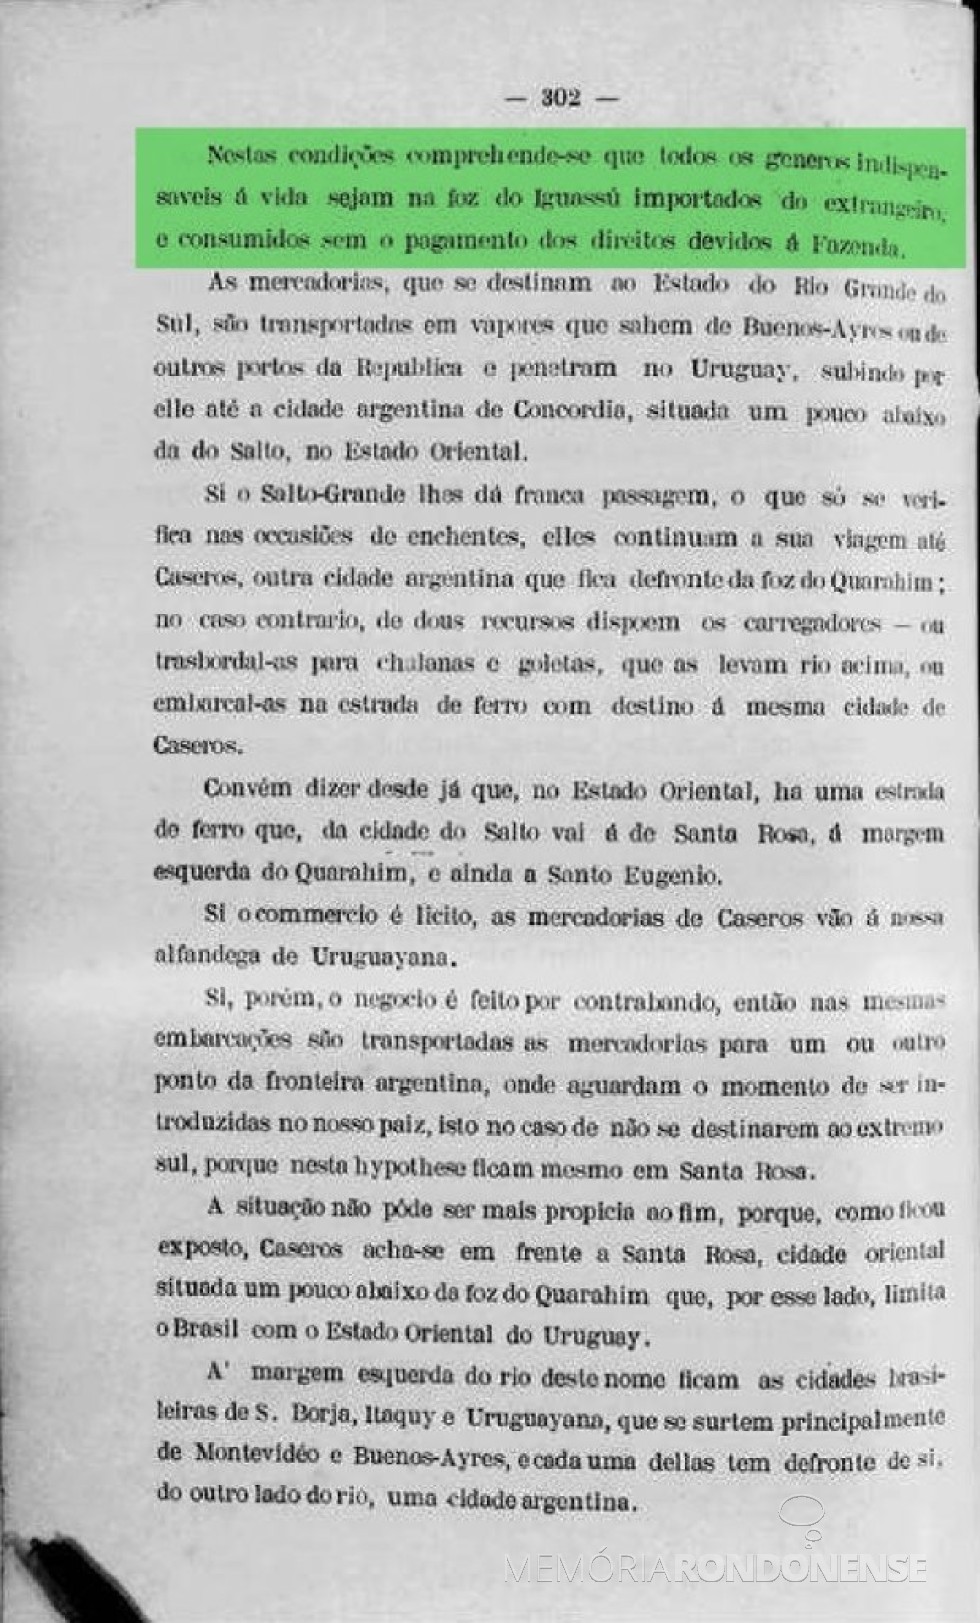 || Página 302 do Relatório do Ministério dos Negícios da Fazenda de 1903.
Imagem: Acervo Biblioteca Nacional Digital - FOTO 5 - 